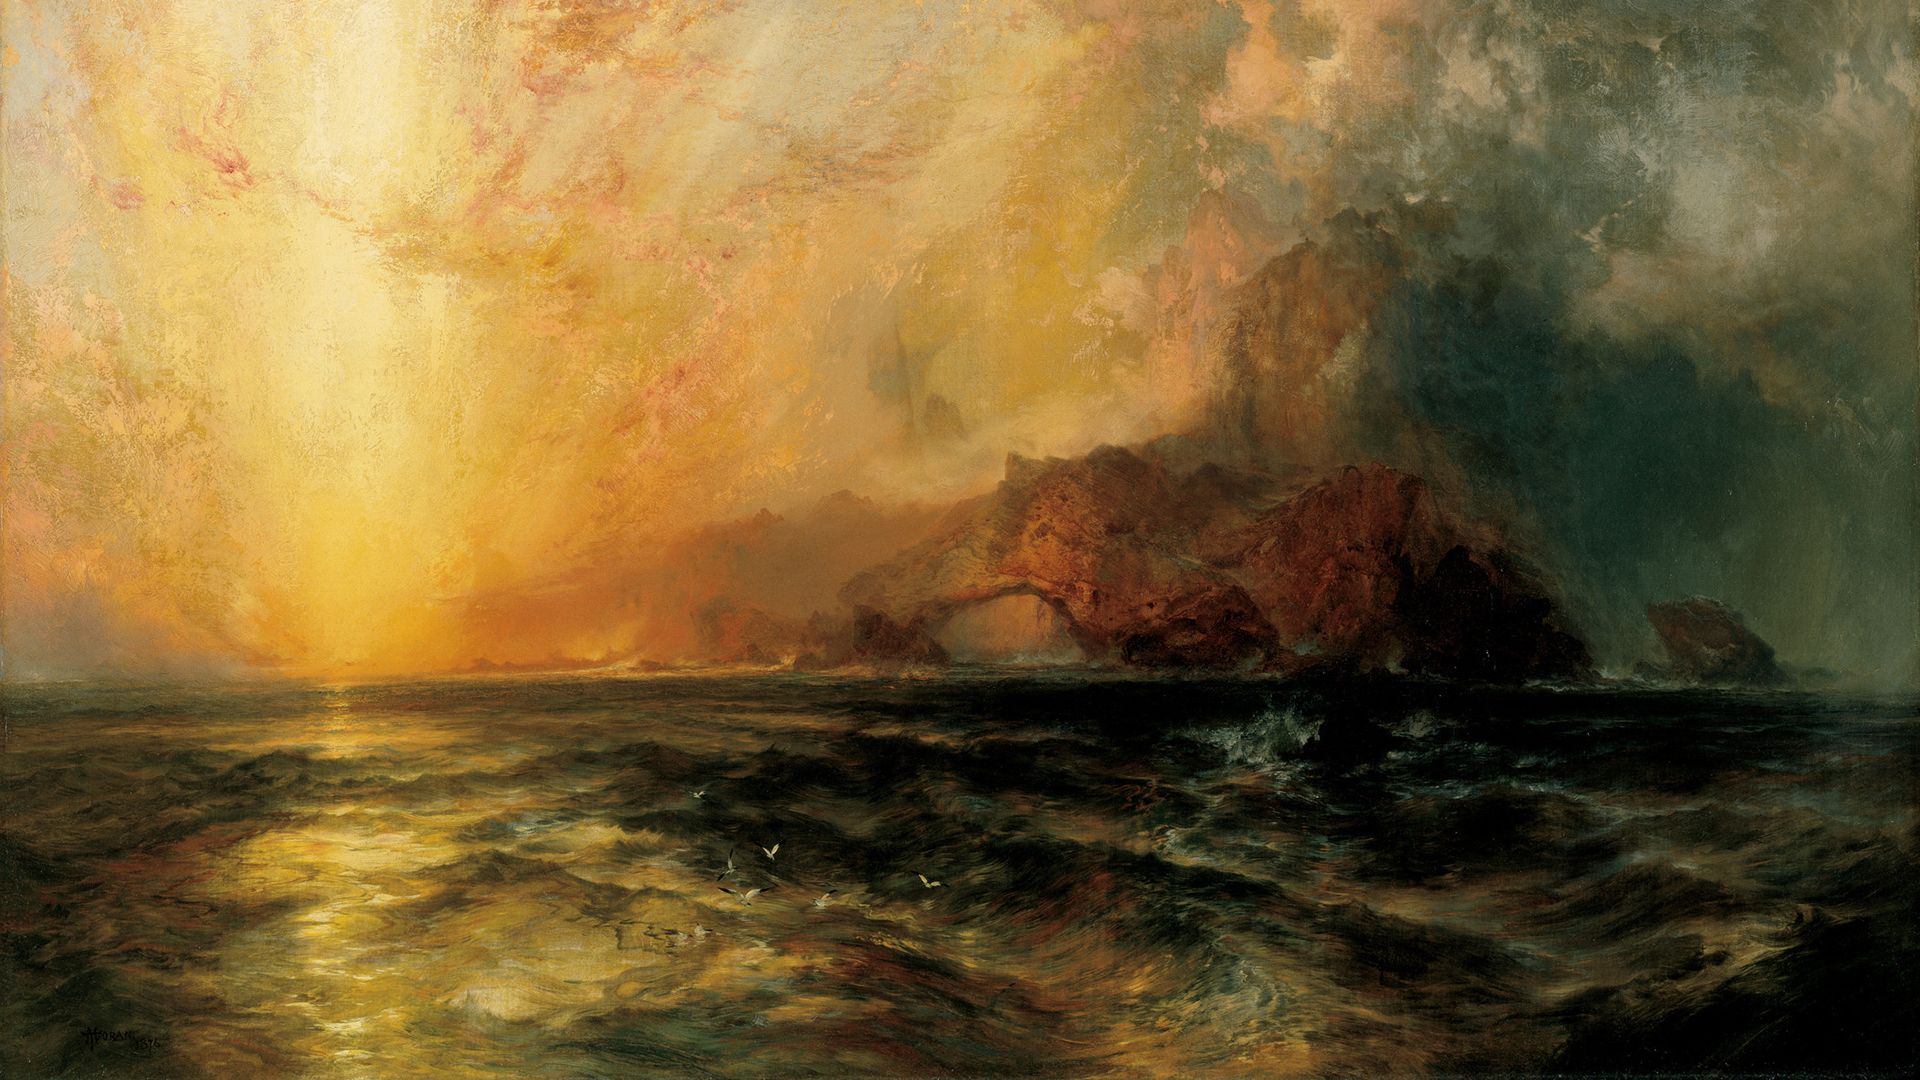 J. M. W. Turner, traditional art, seax1080 Wallpaper